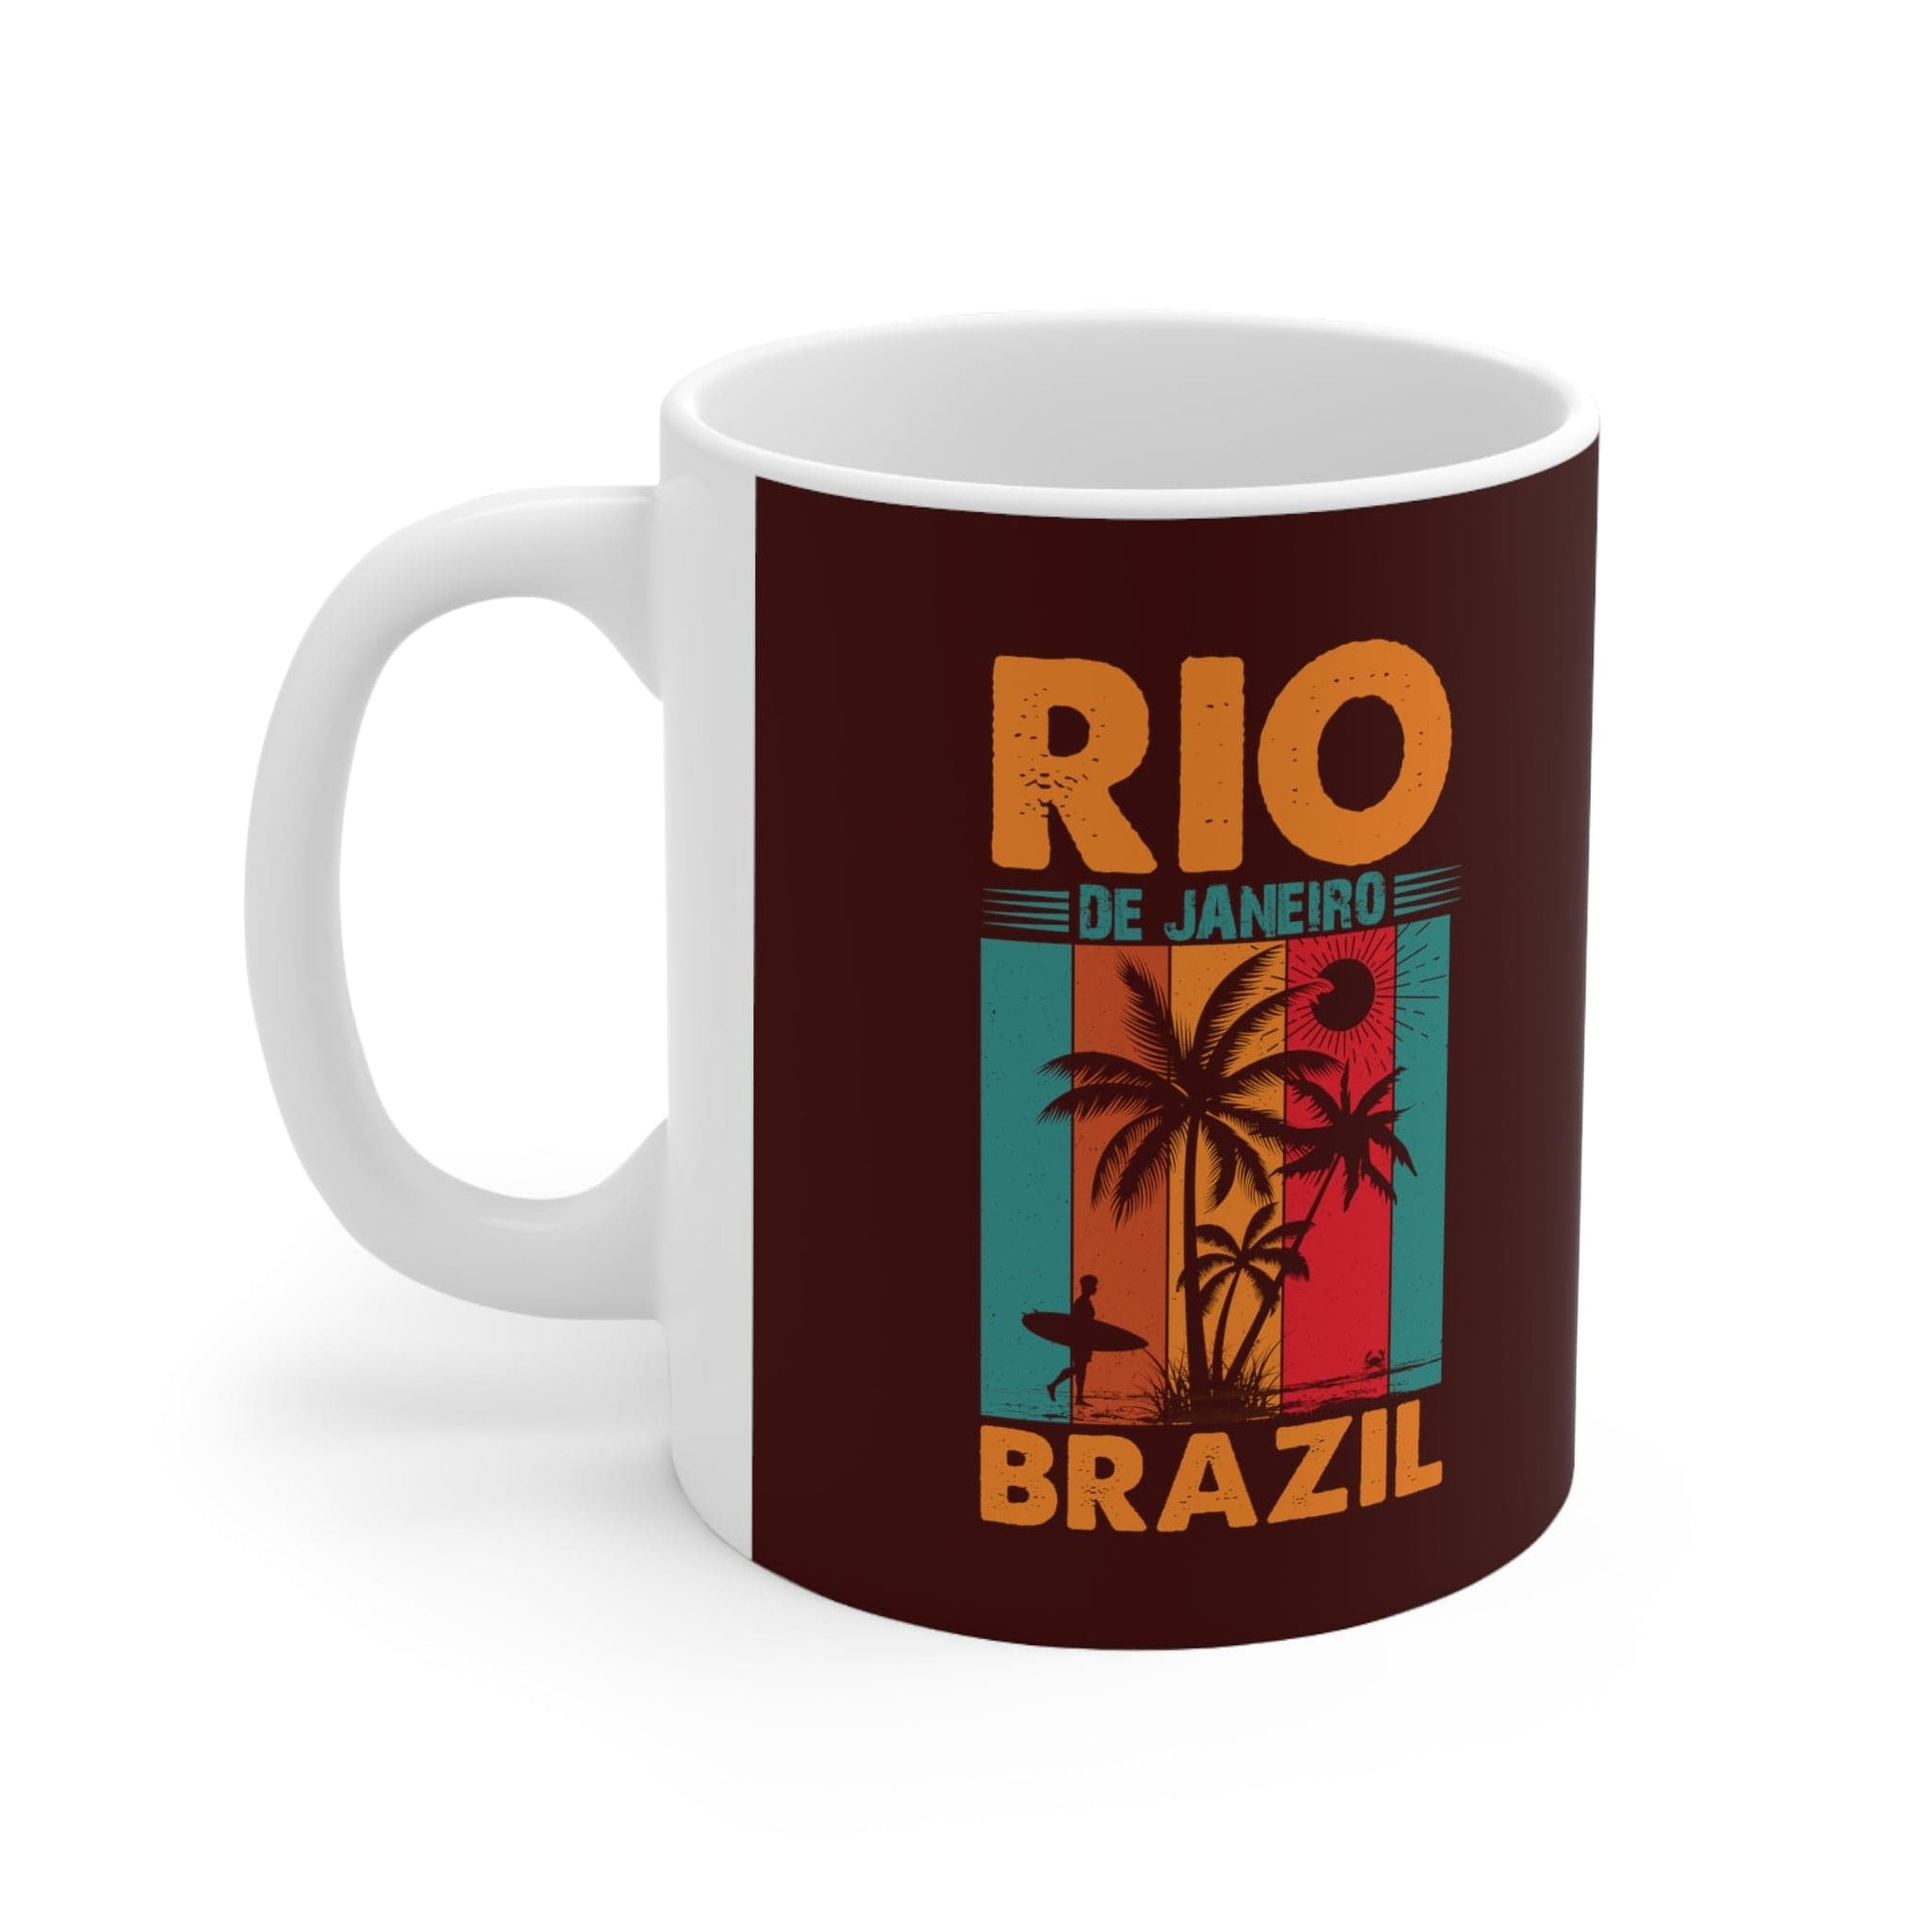 RIO de JANEIRO - Awesome Ceramic Mug, Exclusive Design